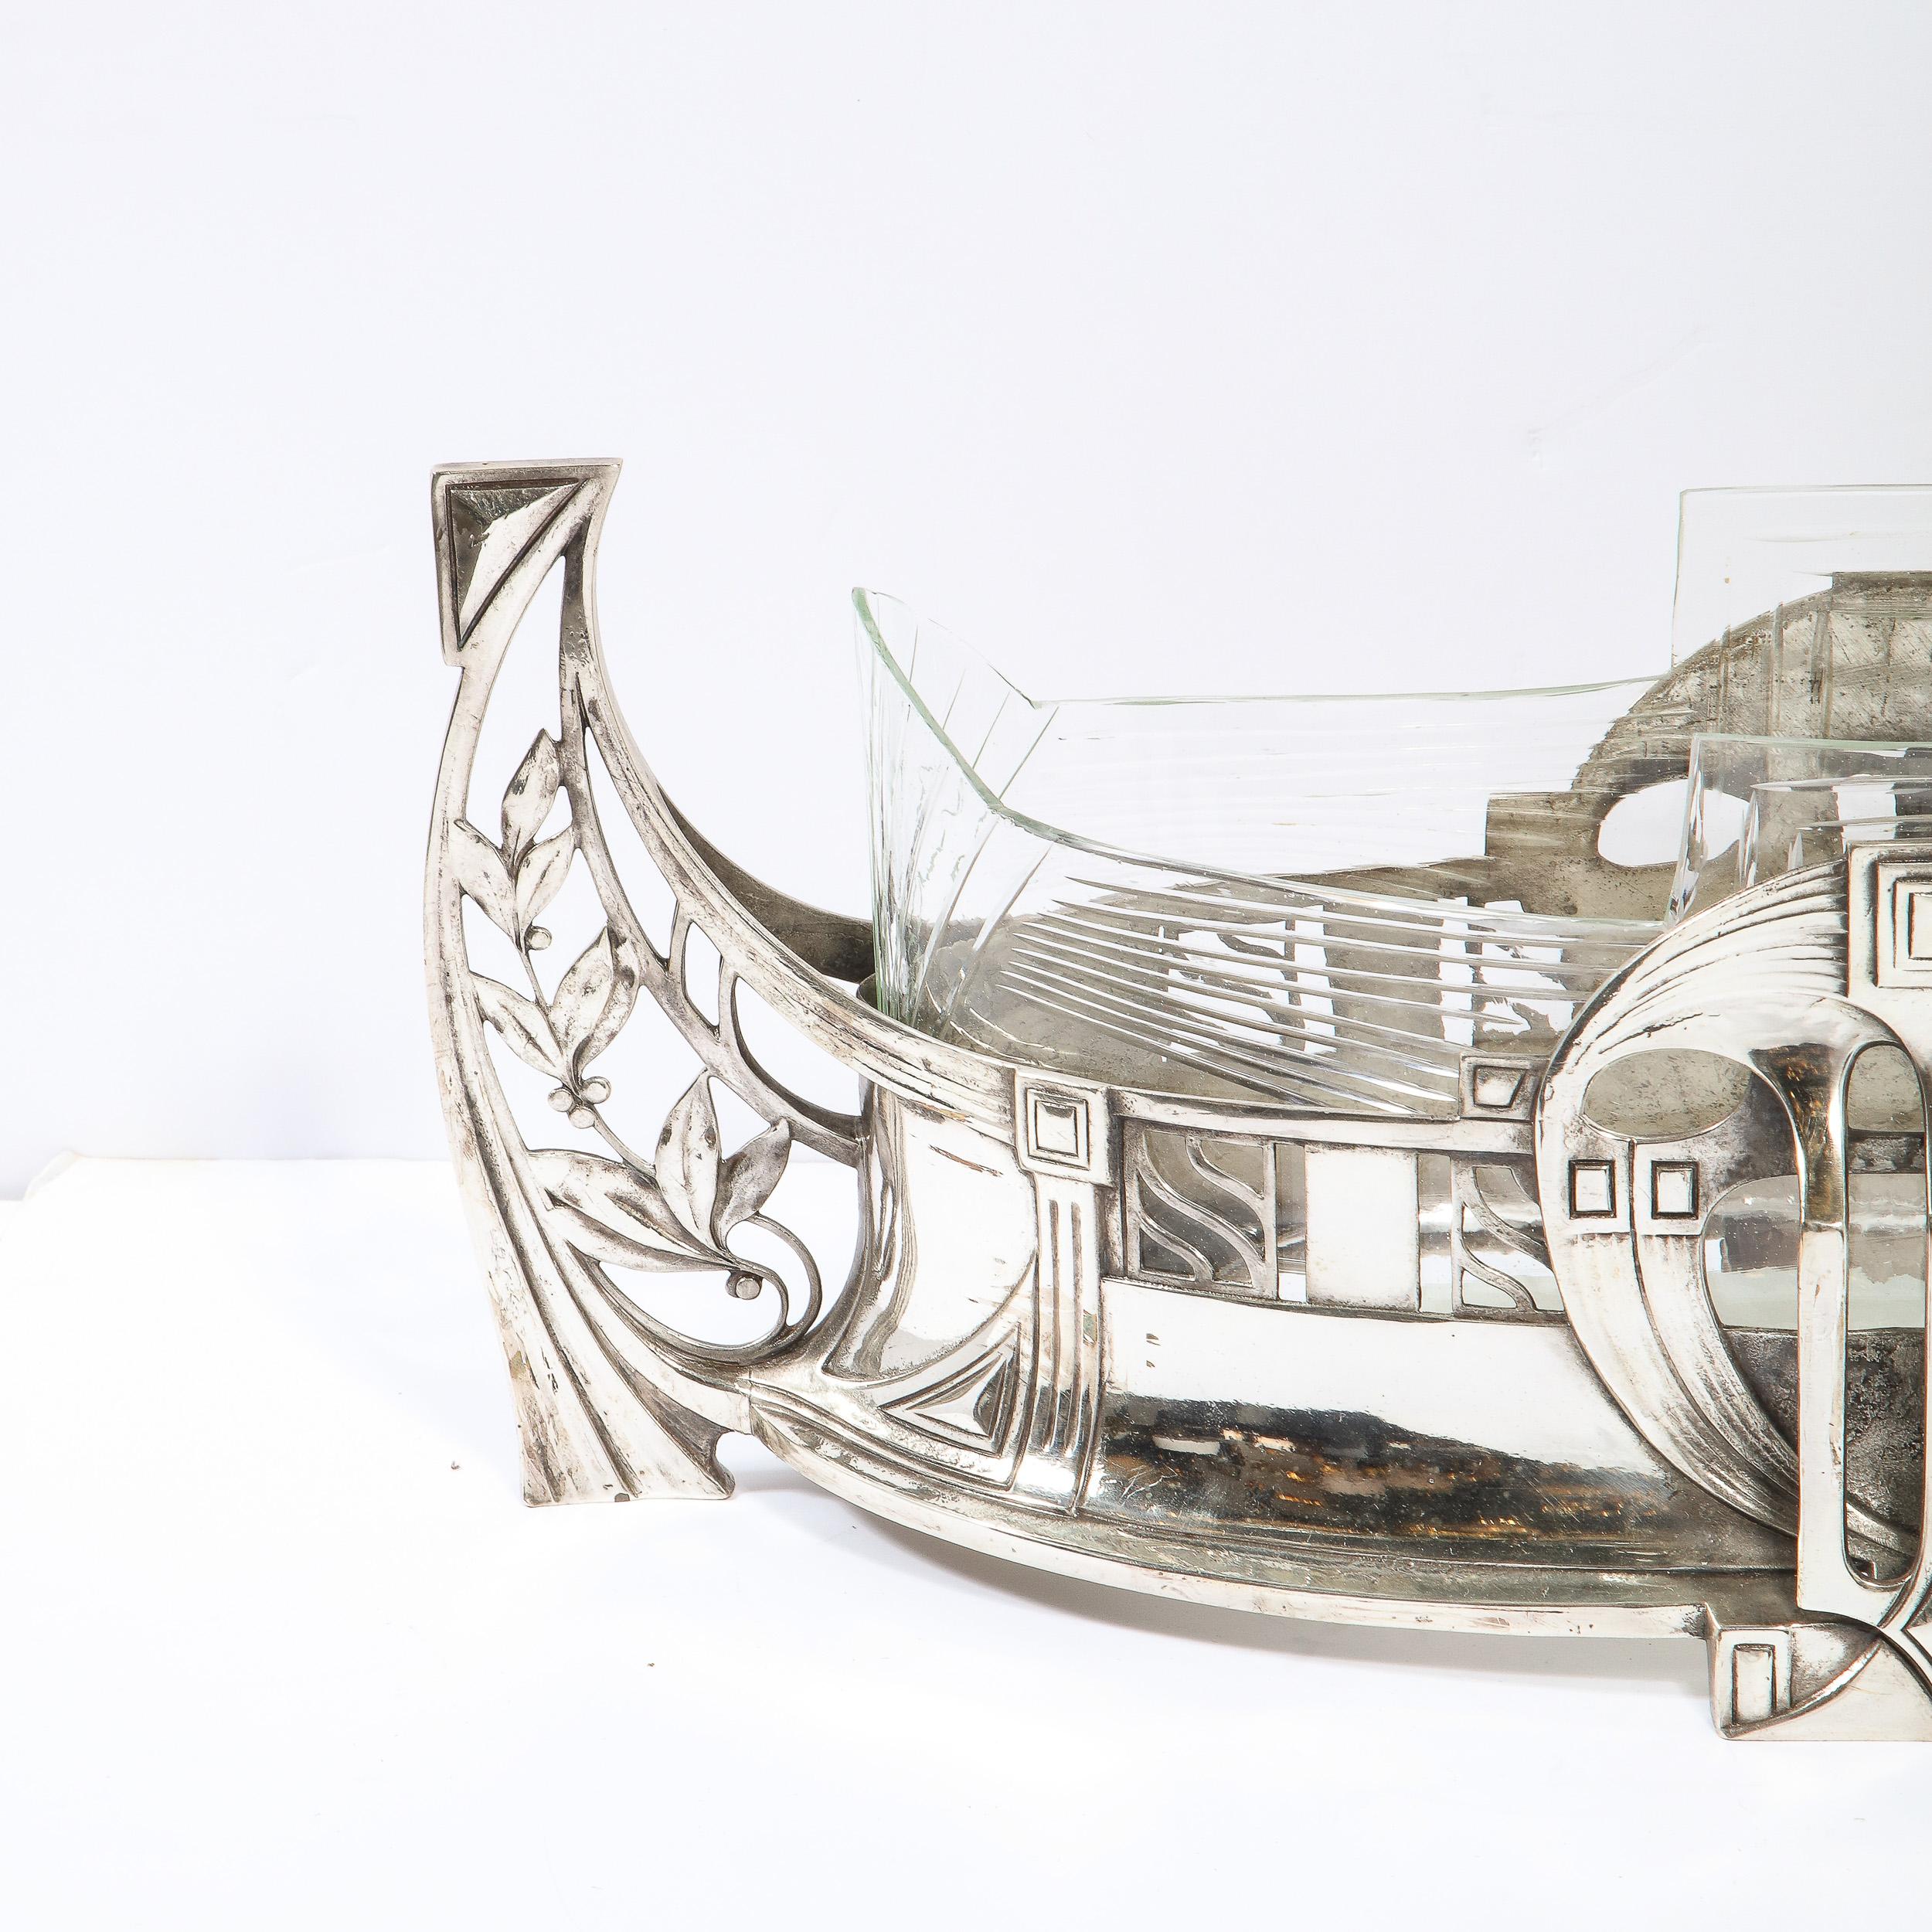 Cet élégant centre de table Art Déco en métal argenté a été réalisé par l'atelier estimé de WMF Ikora en Allemagne vers 1925. Ressemblant à un Adrestia stylisé, ou navire de la Grèce antique, la pièce présente des côtés profilés de forme ouverte